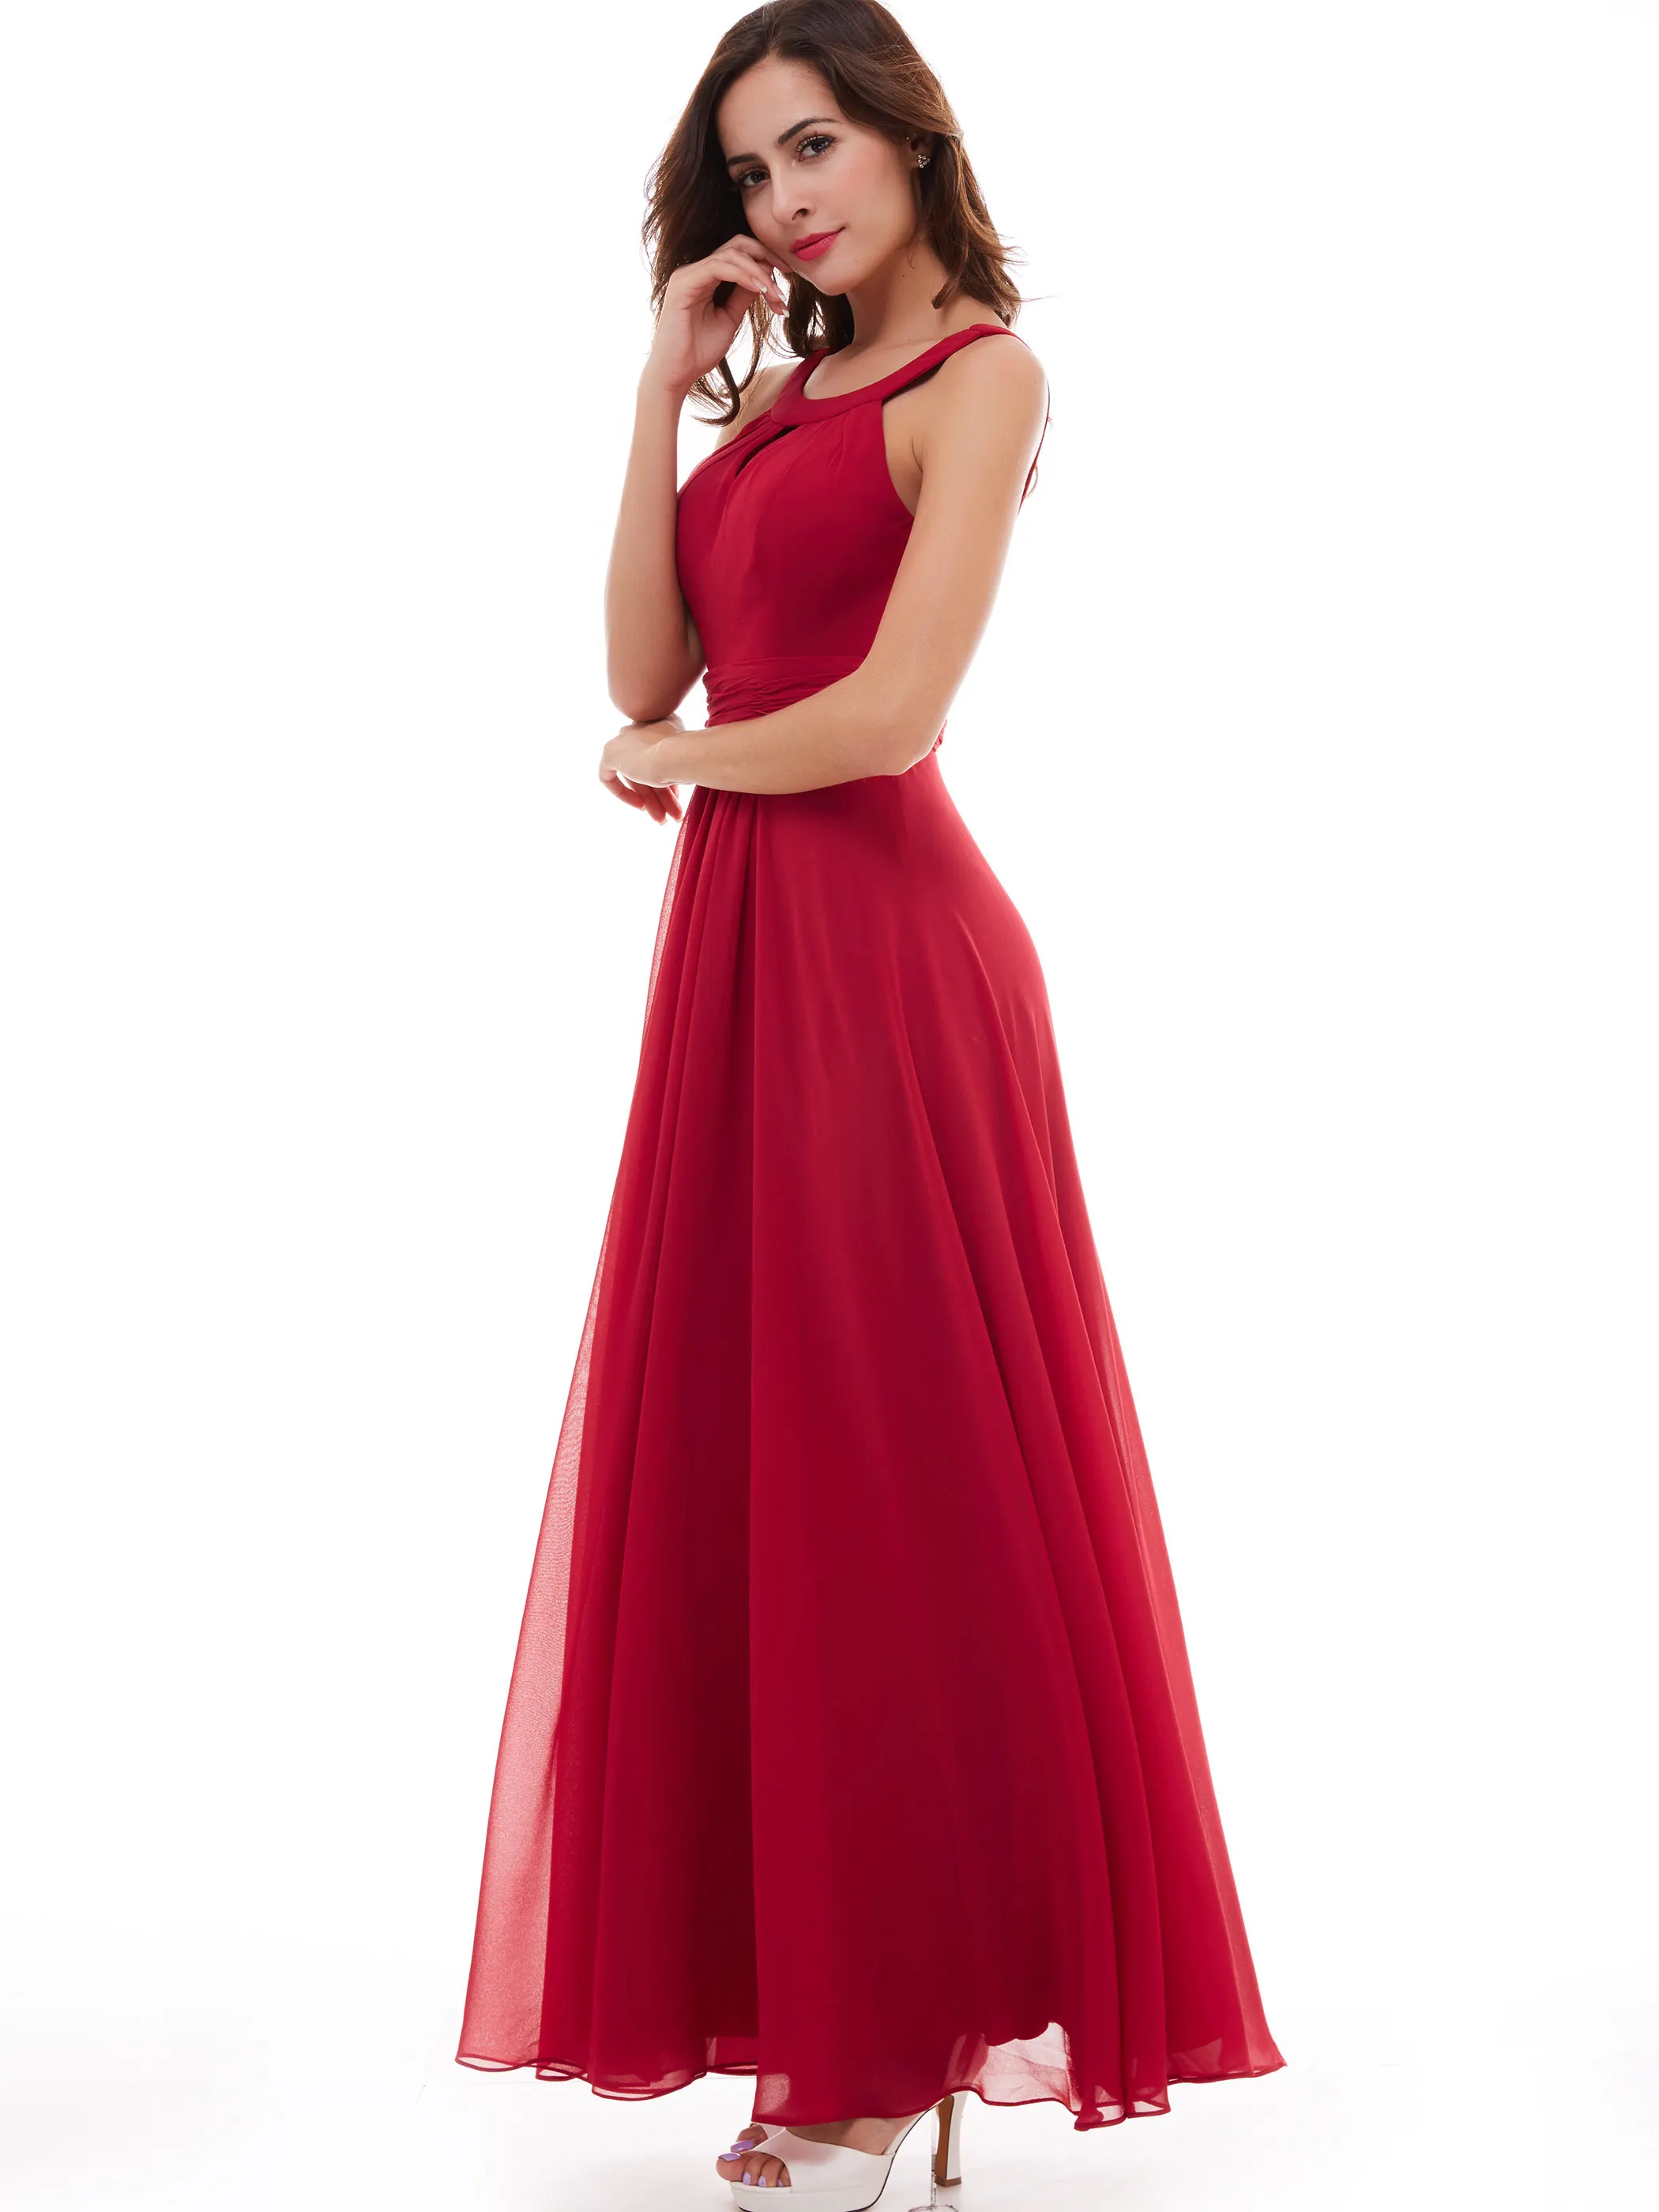 Dresssv вечернее платье, шифоновое красное платье без рукавов с рюшами, длина до пола,, розовые драпированные Вечерние платья на молнии, длинное вечернее платье